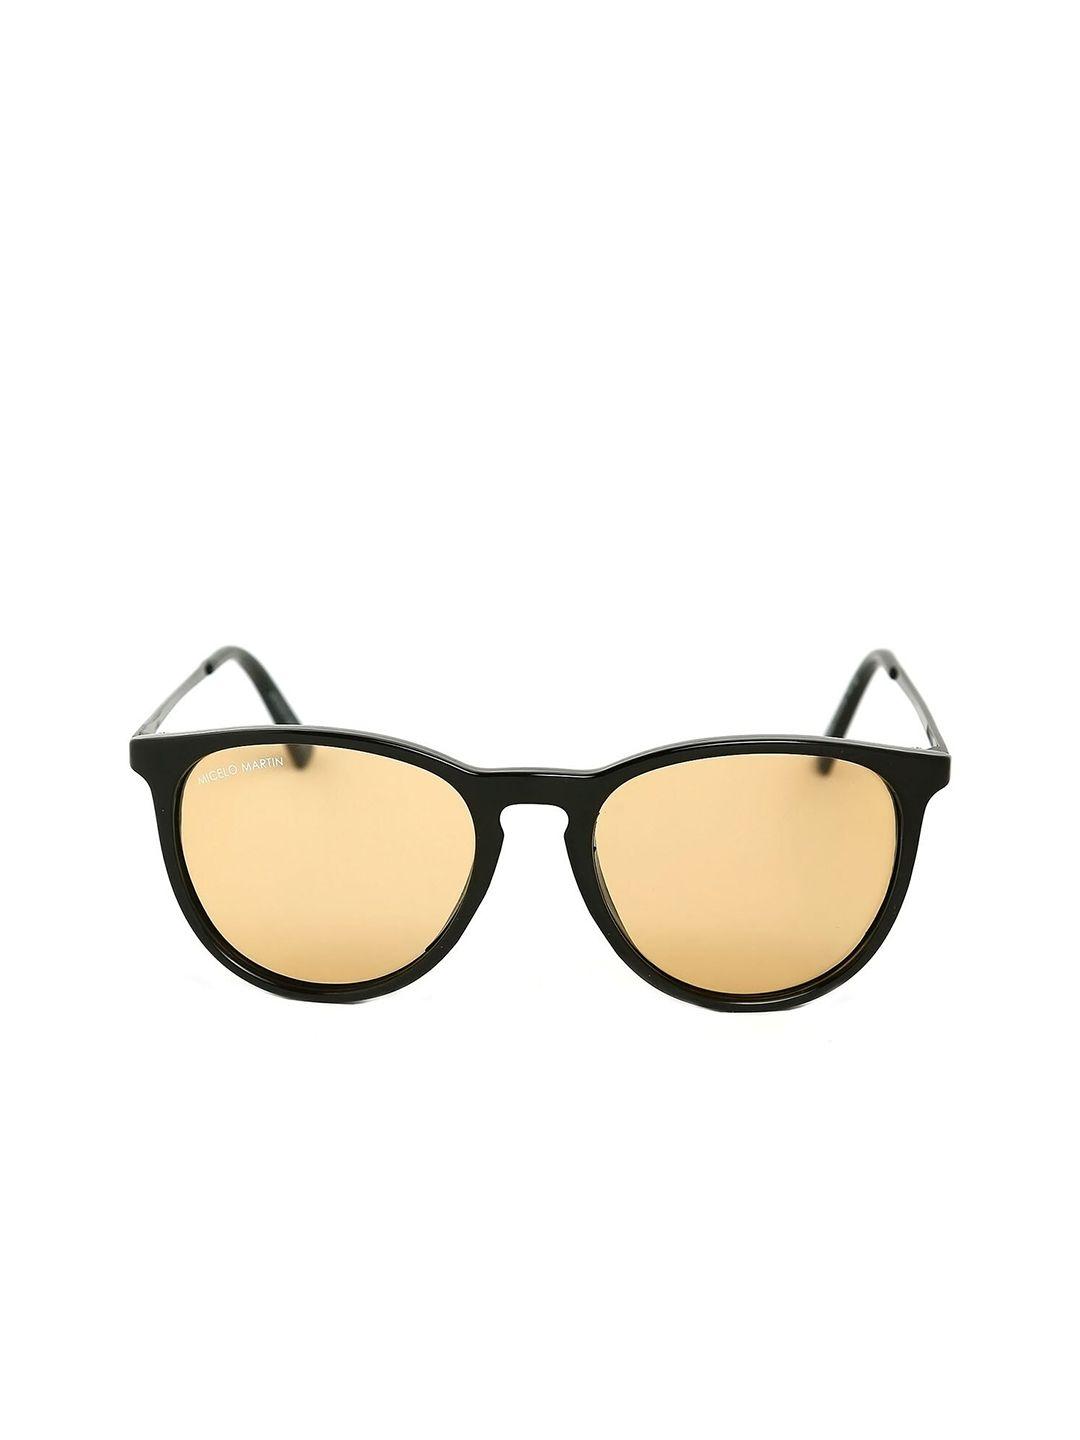 micelo martin unisex orange lens & black uv protected wayfarer sunglasses mm2002 c2-